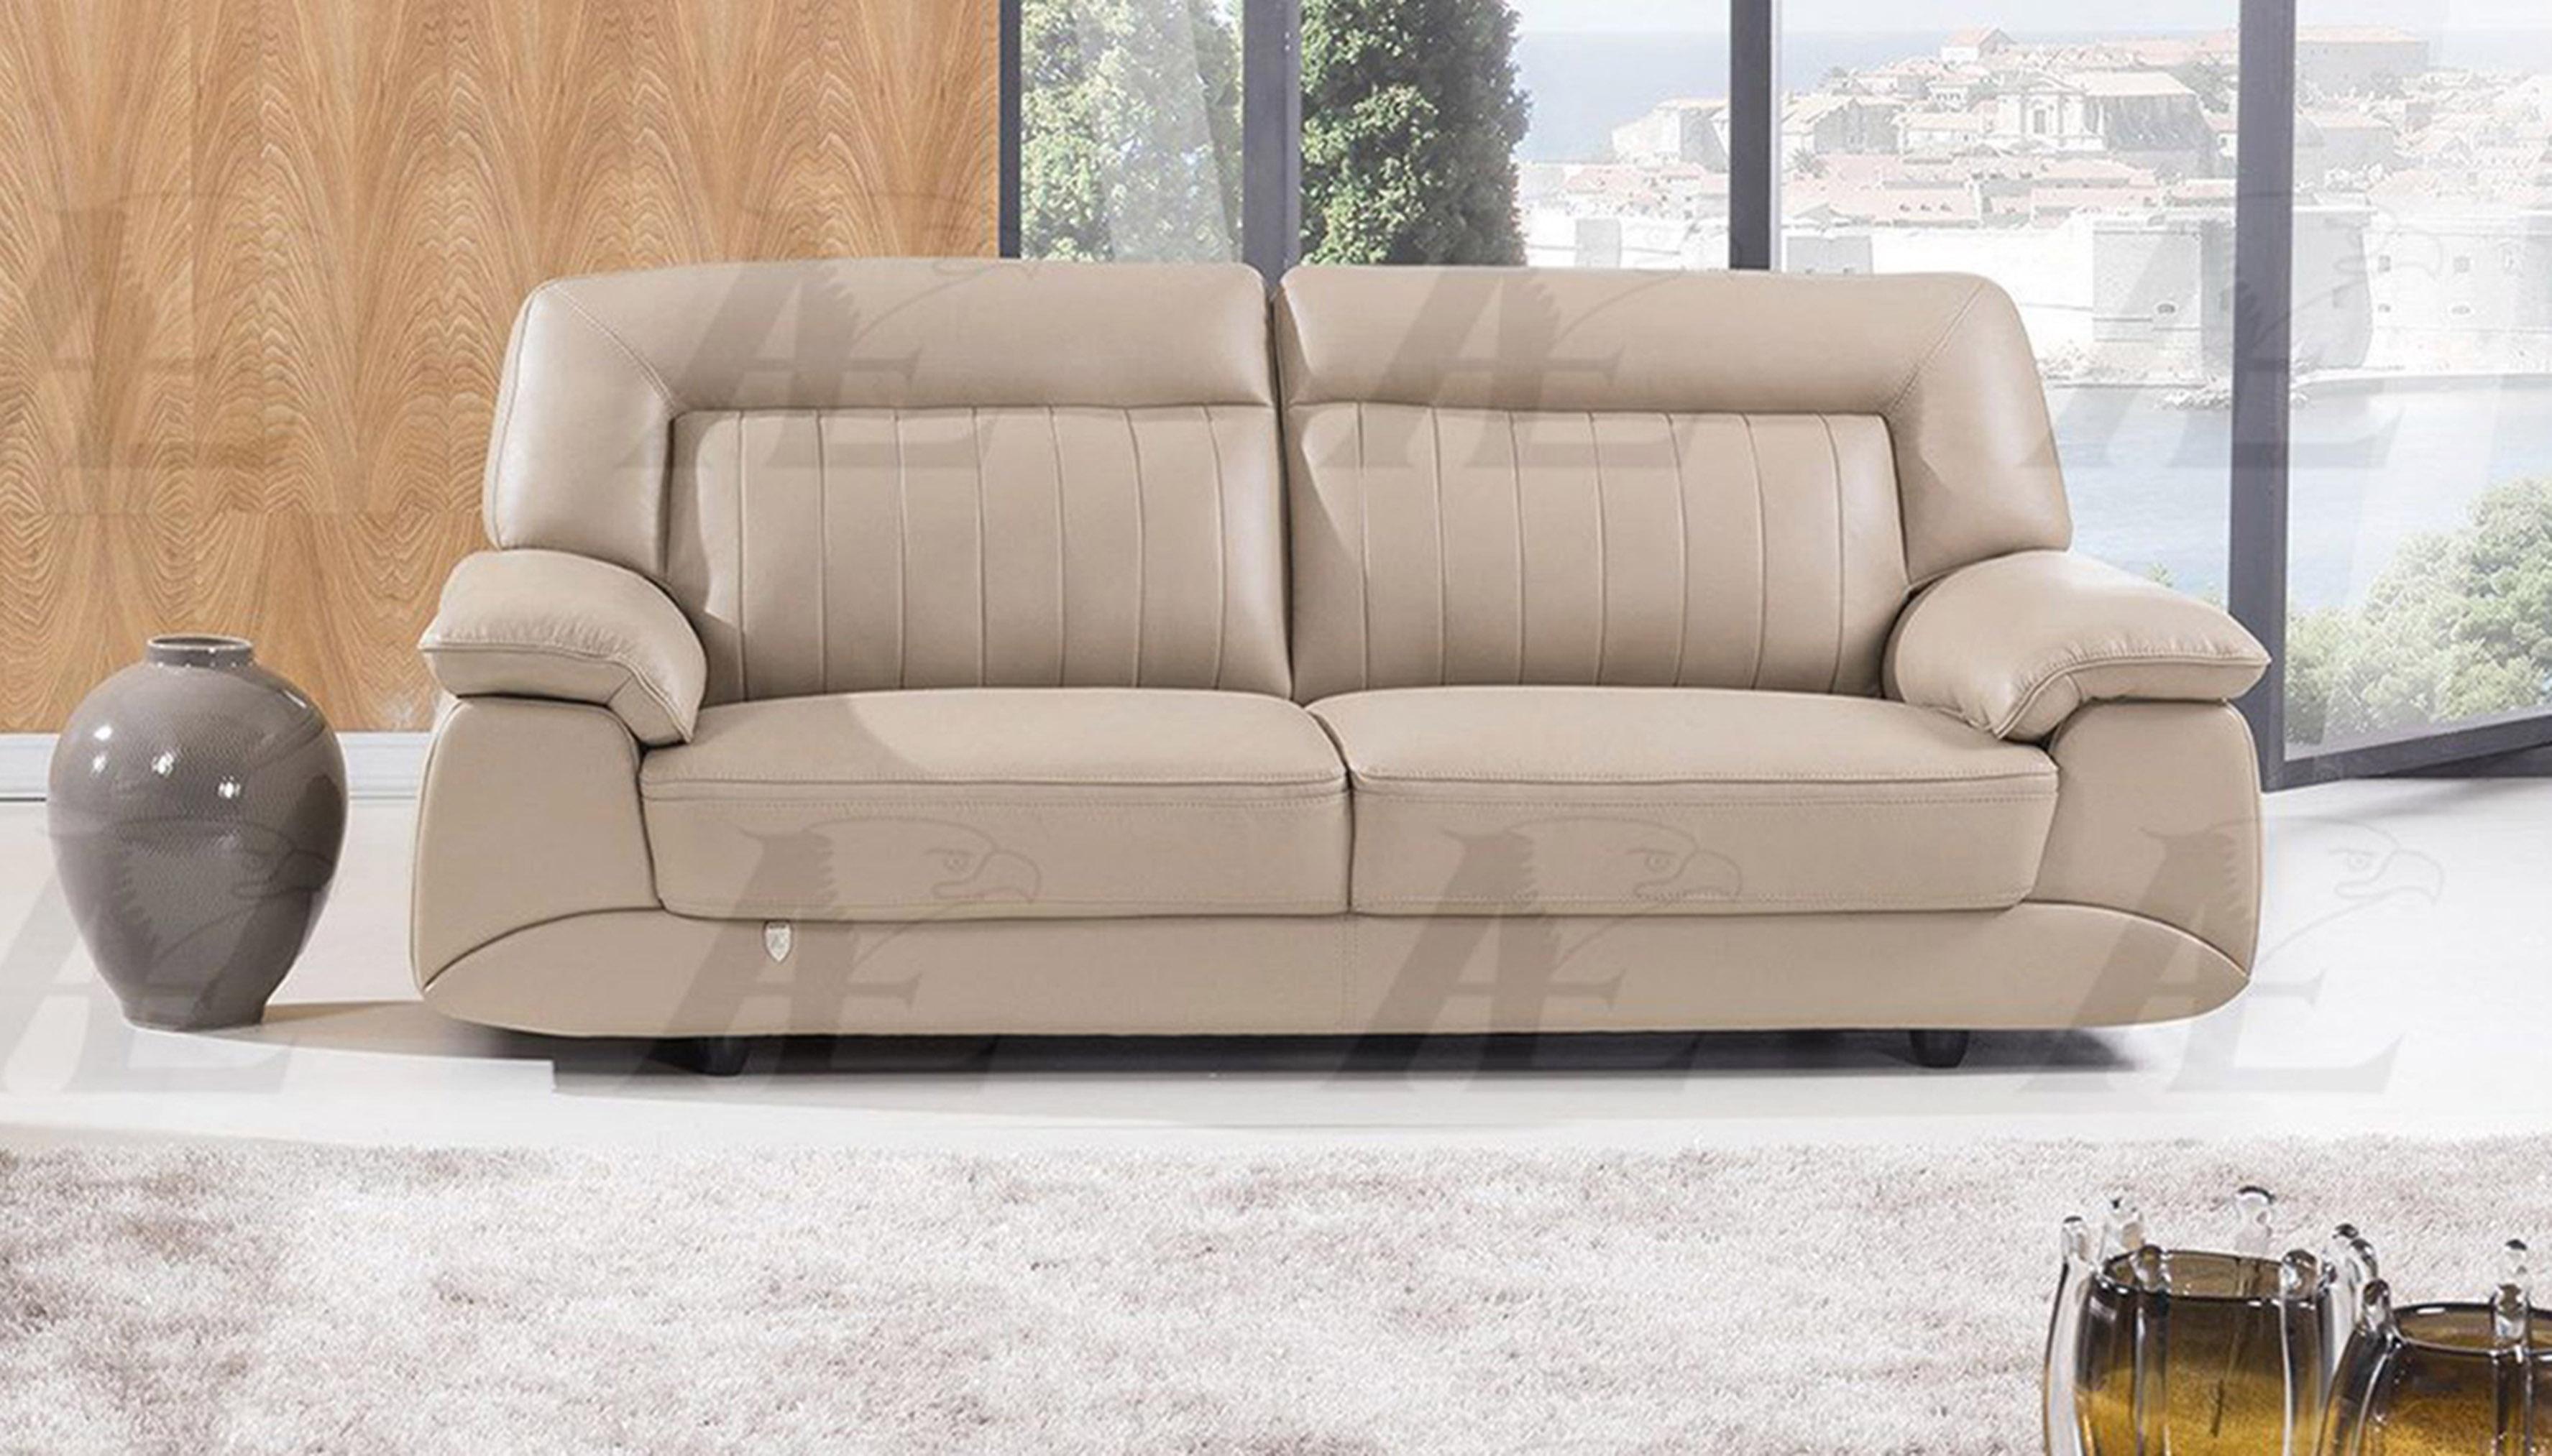 

    
American Eagle Furniture EK072-TAN Sofa and Loveseat Set Tan EK072-TAN Set-2
